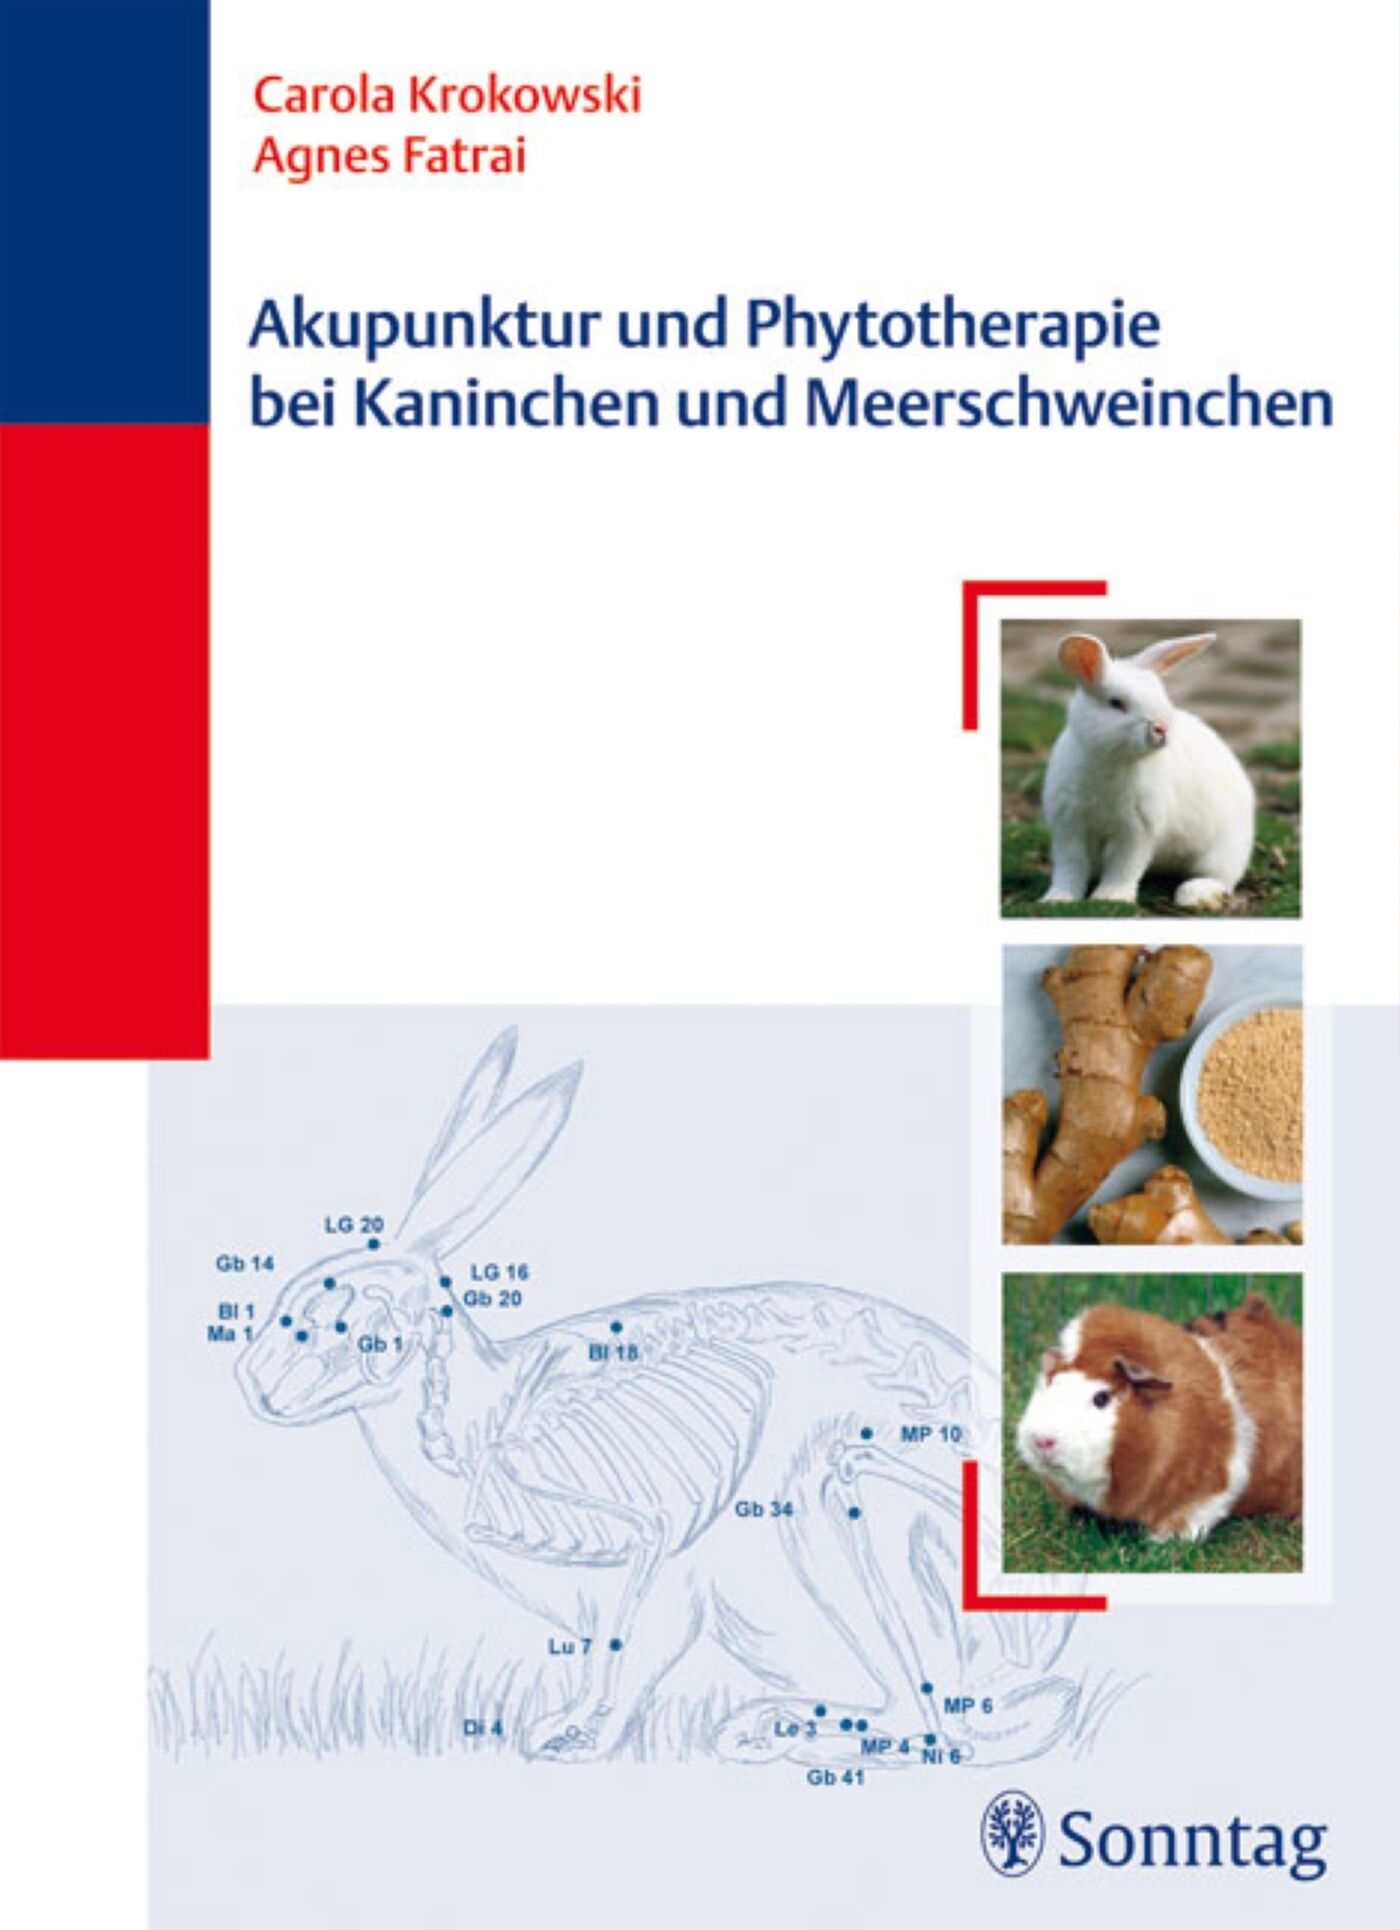 Akupunktur und Phytotherapie bei Kaninchen und Meerschweinchen, 9783830494256